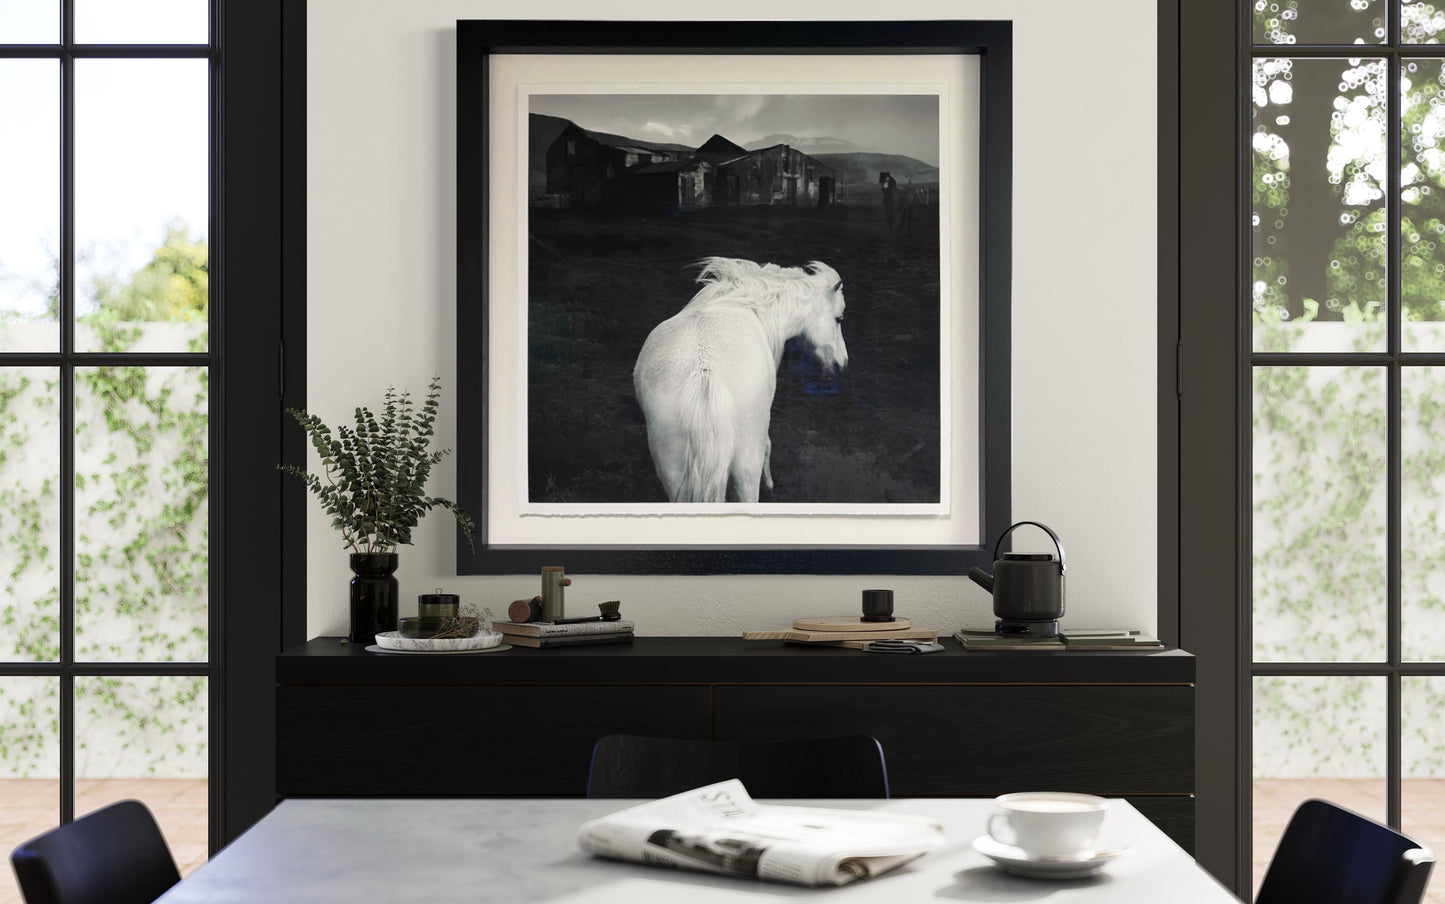 White Horse (Framed)